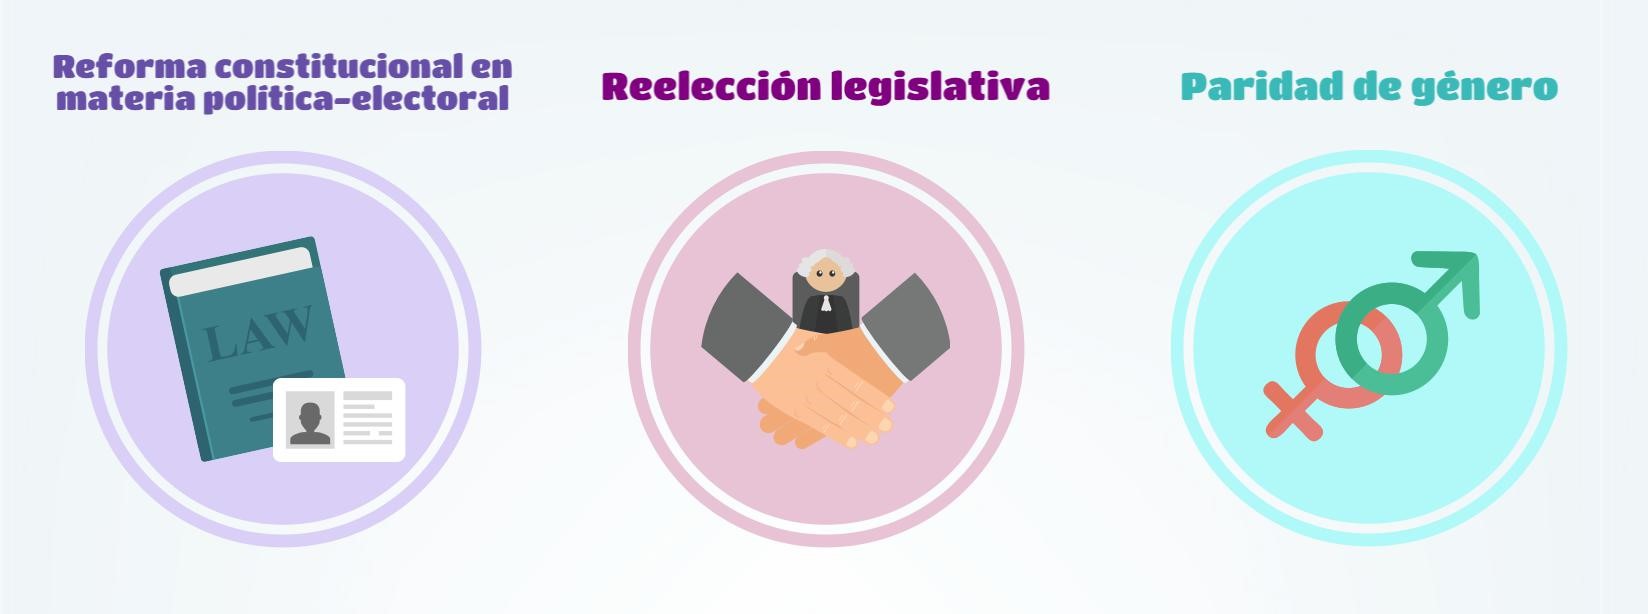 Generalidades de las reformas político-electorales en México El 10 de febrero de 2014 se publicó en el Diario Oficial de la Federación la comúnmente denominada reforma constitucional en materia